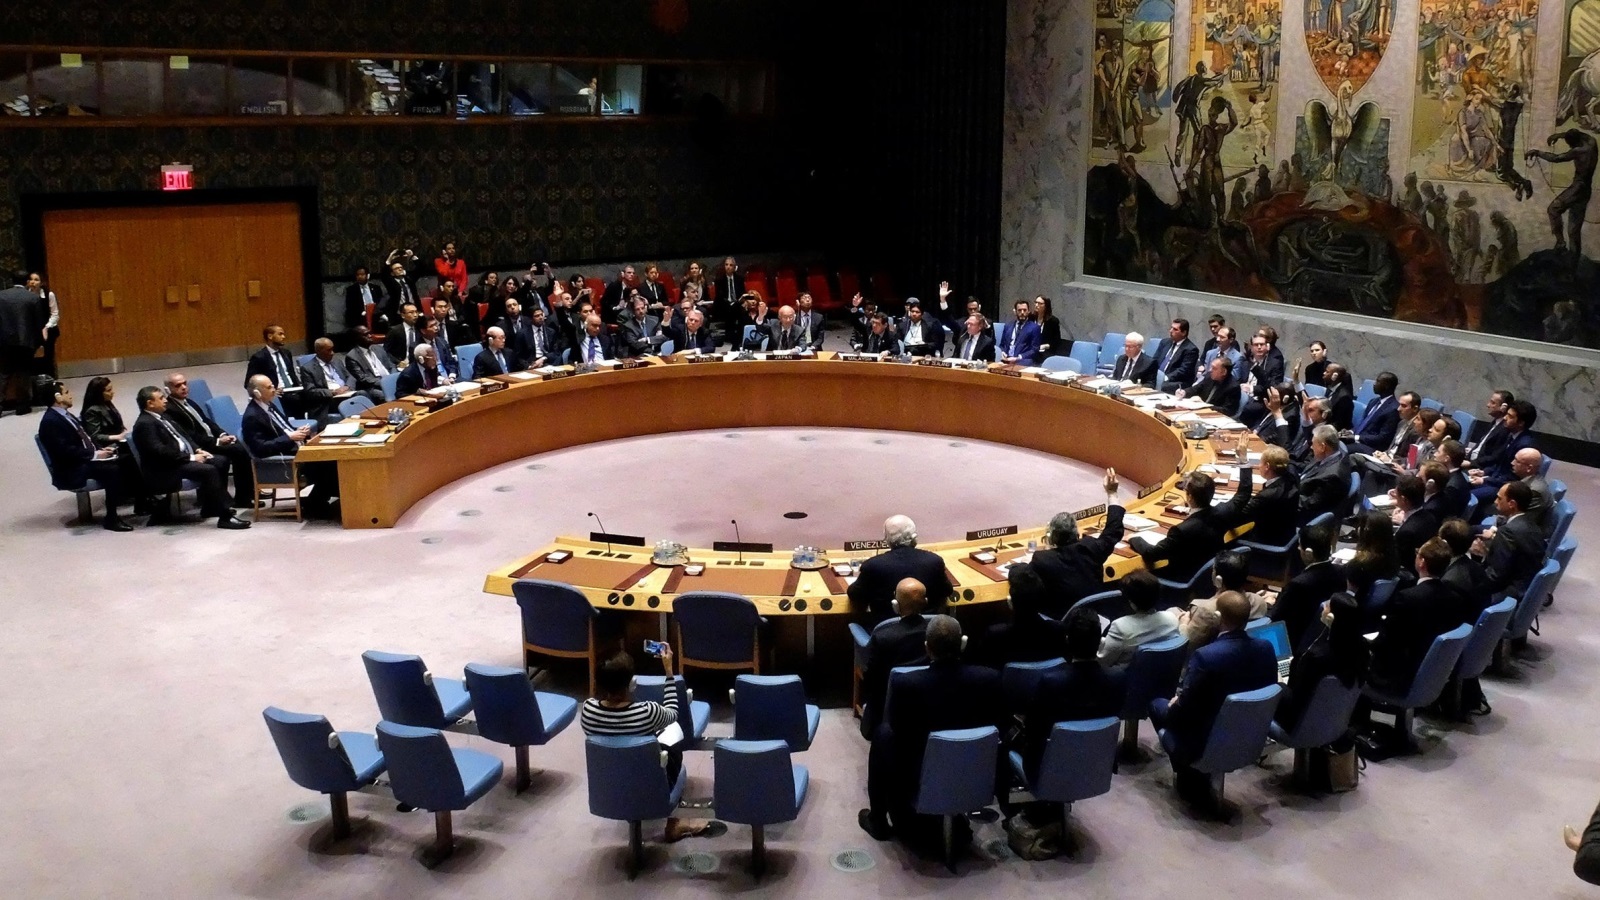 ‪مجلس الأمن في أكتوبر/تشرين الأول الماضي بحث وقف إطلاق النار بحلب‬ 
مجلس الأمن في أكتوبر/تشرين الأول الماضي بحث وقف إطلاق النار بحلب (رويترز)
